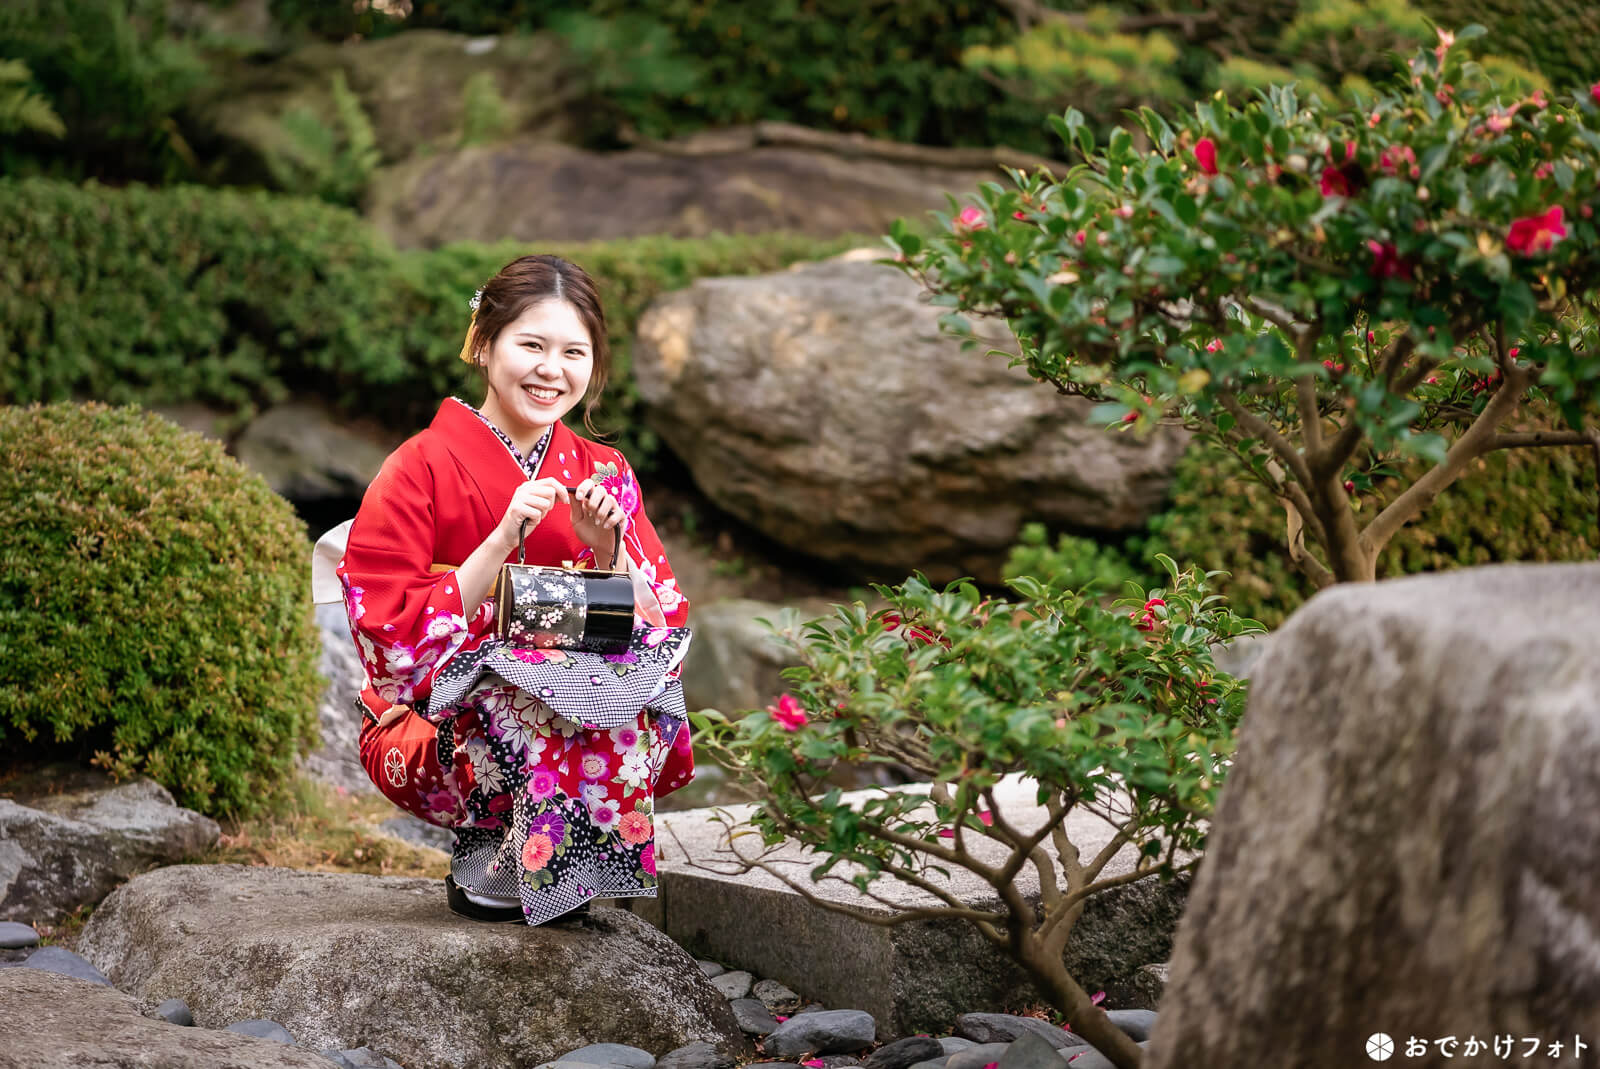 大濠公園日本庭園で成人式のロケーション前撮り